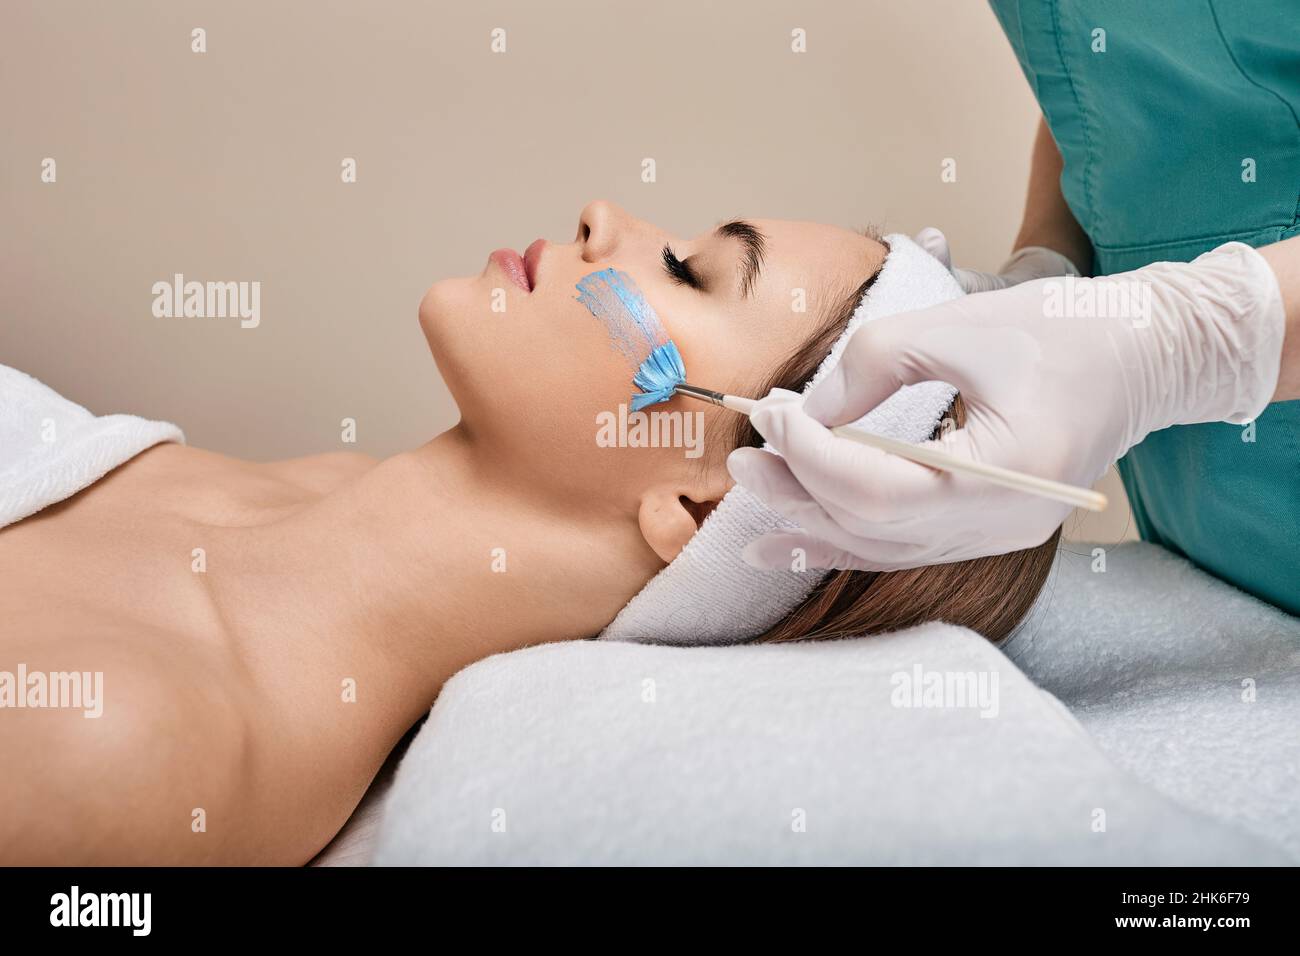 Esthéticienne applique le masque de soin sur le visage de la femme à l'aide d'une brosse de cosmétologie. soins de la peau du visage avec masque cosmétique à la clinique de beauté Banque D'Images